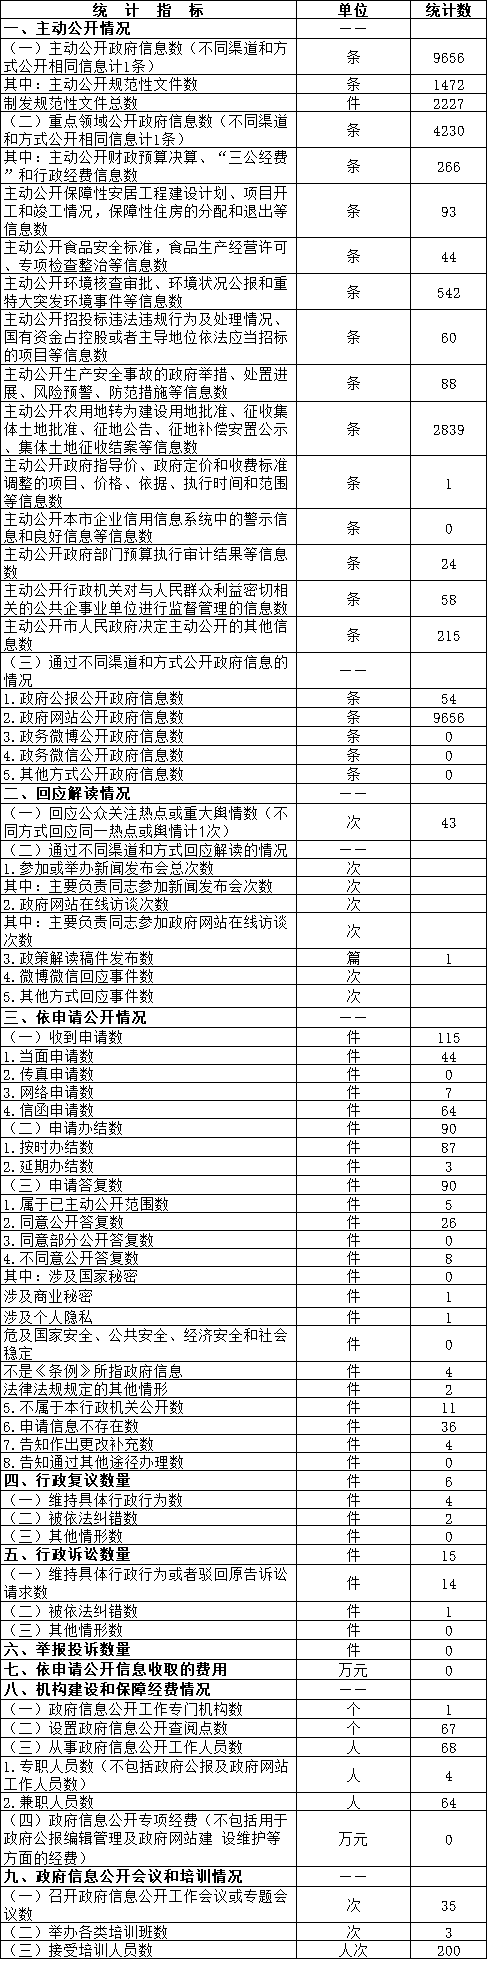 北京市密云区政府信息公开情况统计表(2016年度)